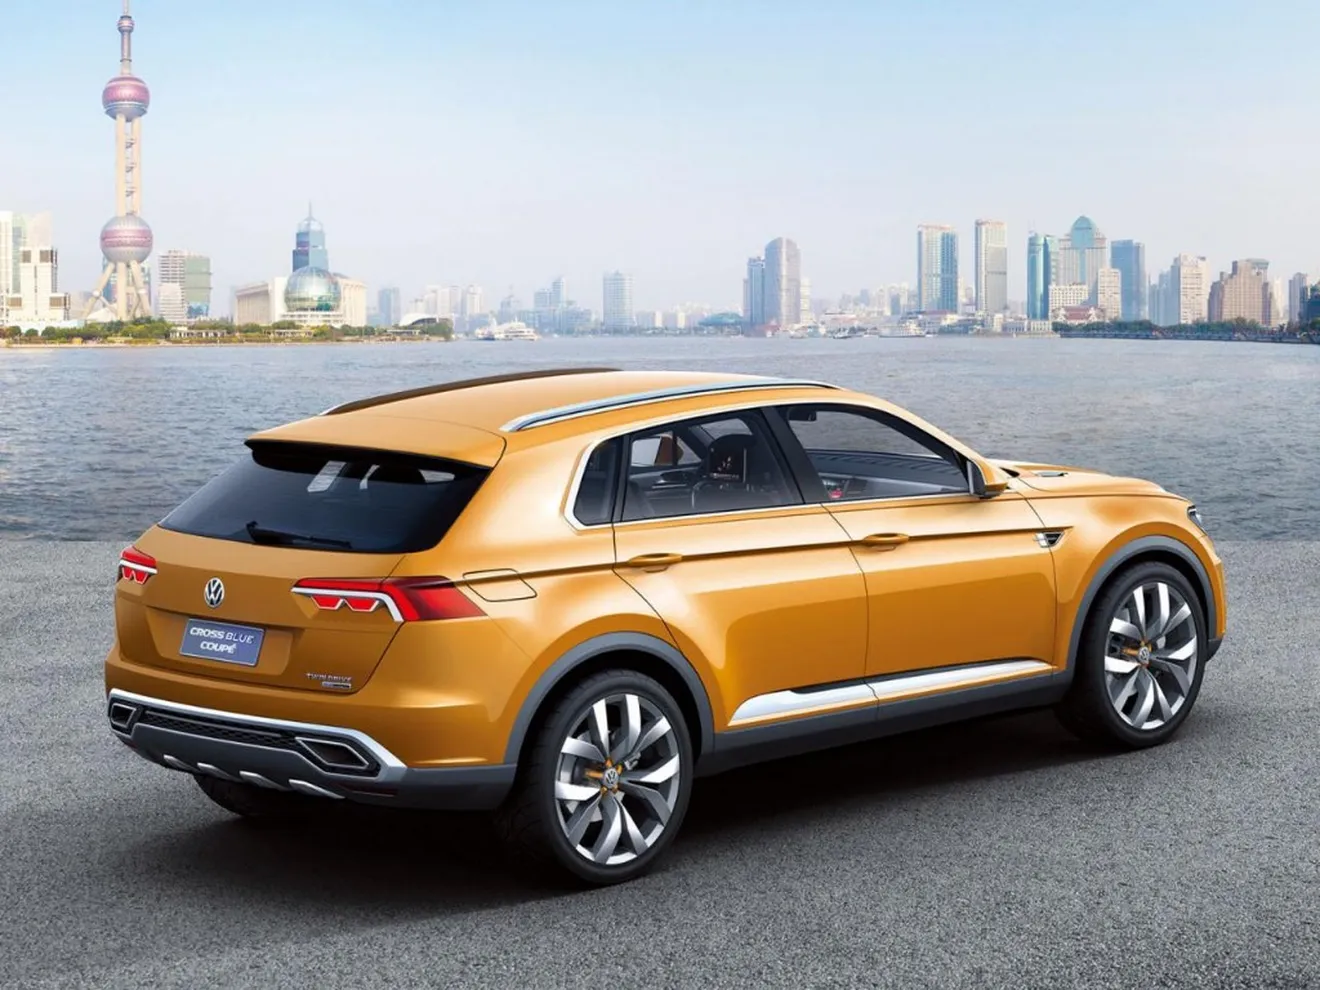 Habrá un Volkswagen Tiguan Coupé R y llegará en 2018